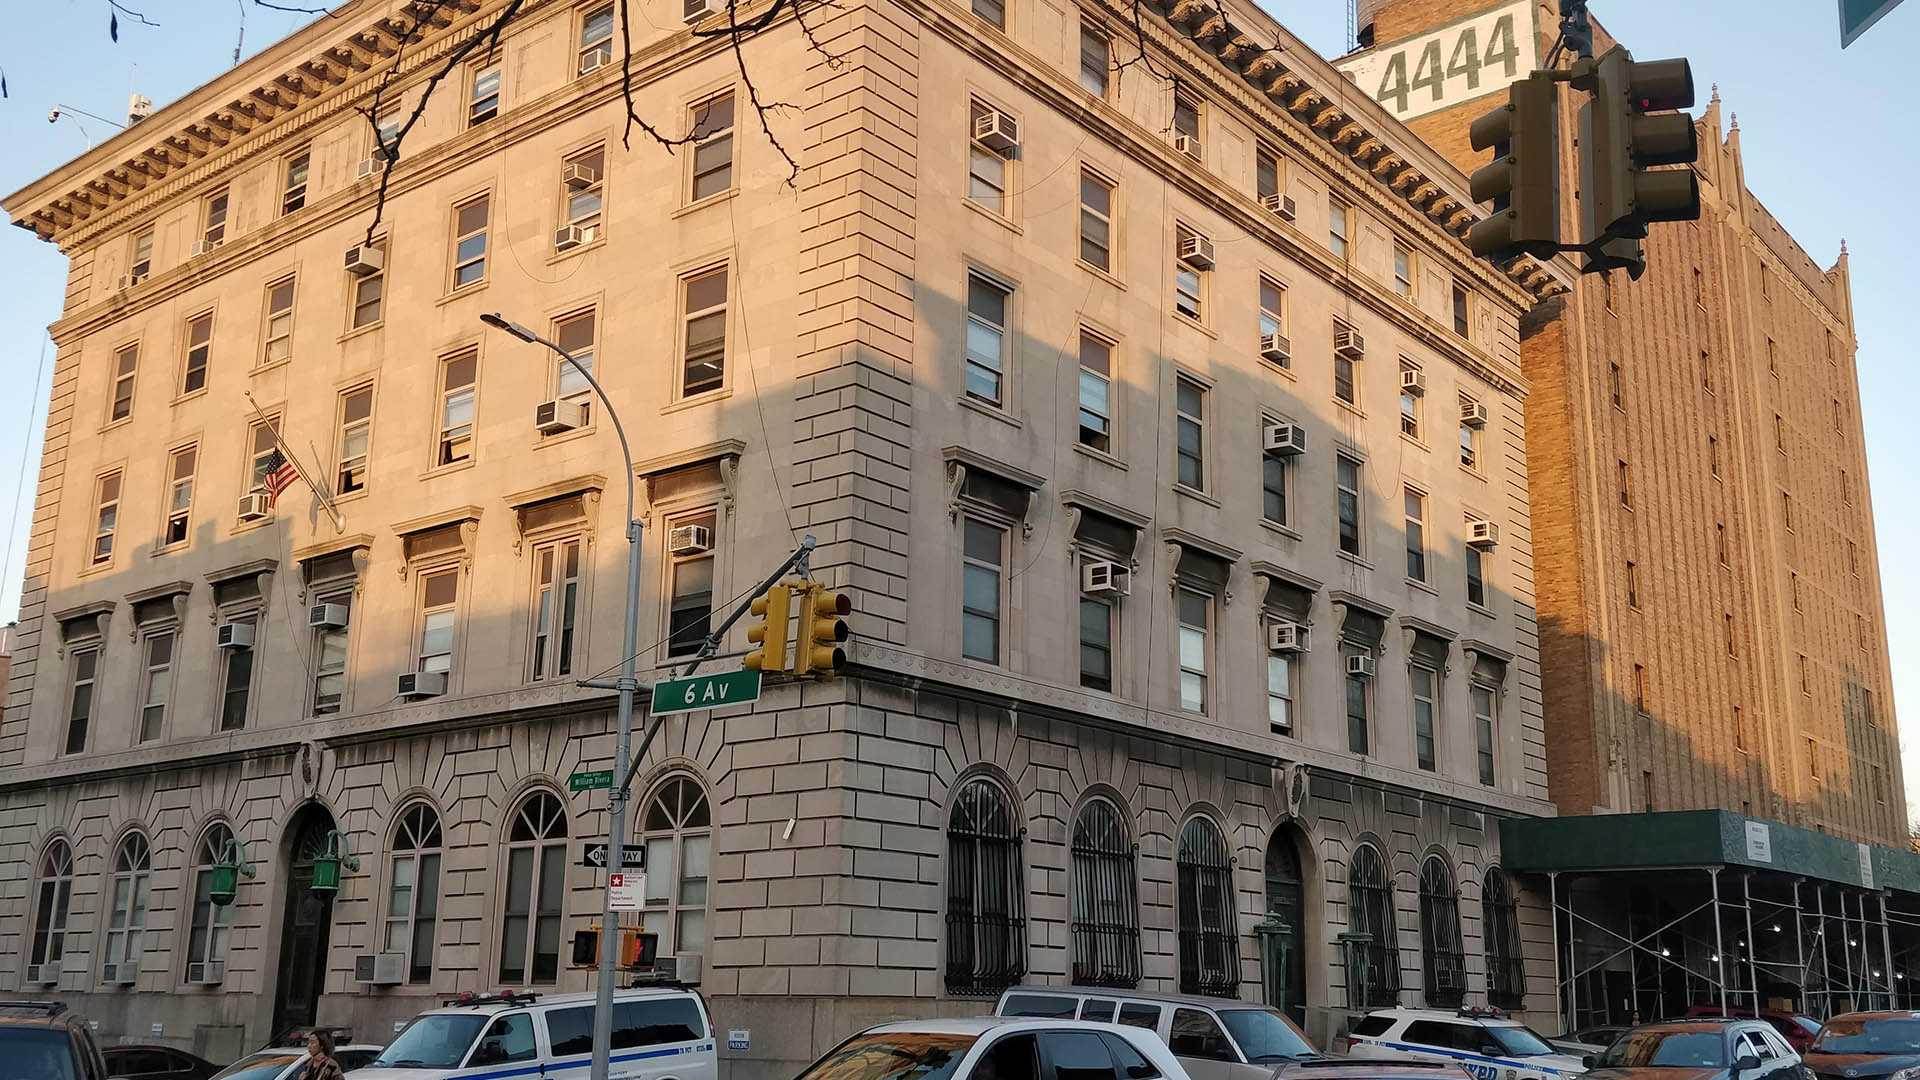 ساختمان واحد شماره ۹۹ پلیس بروکلین در سریال Brooklyn Nine-Nine